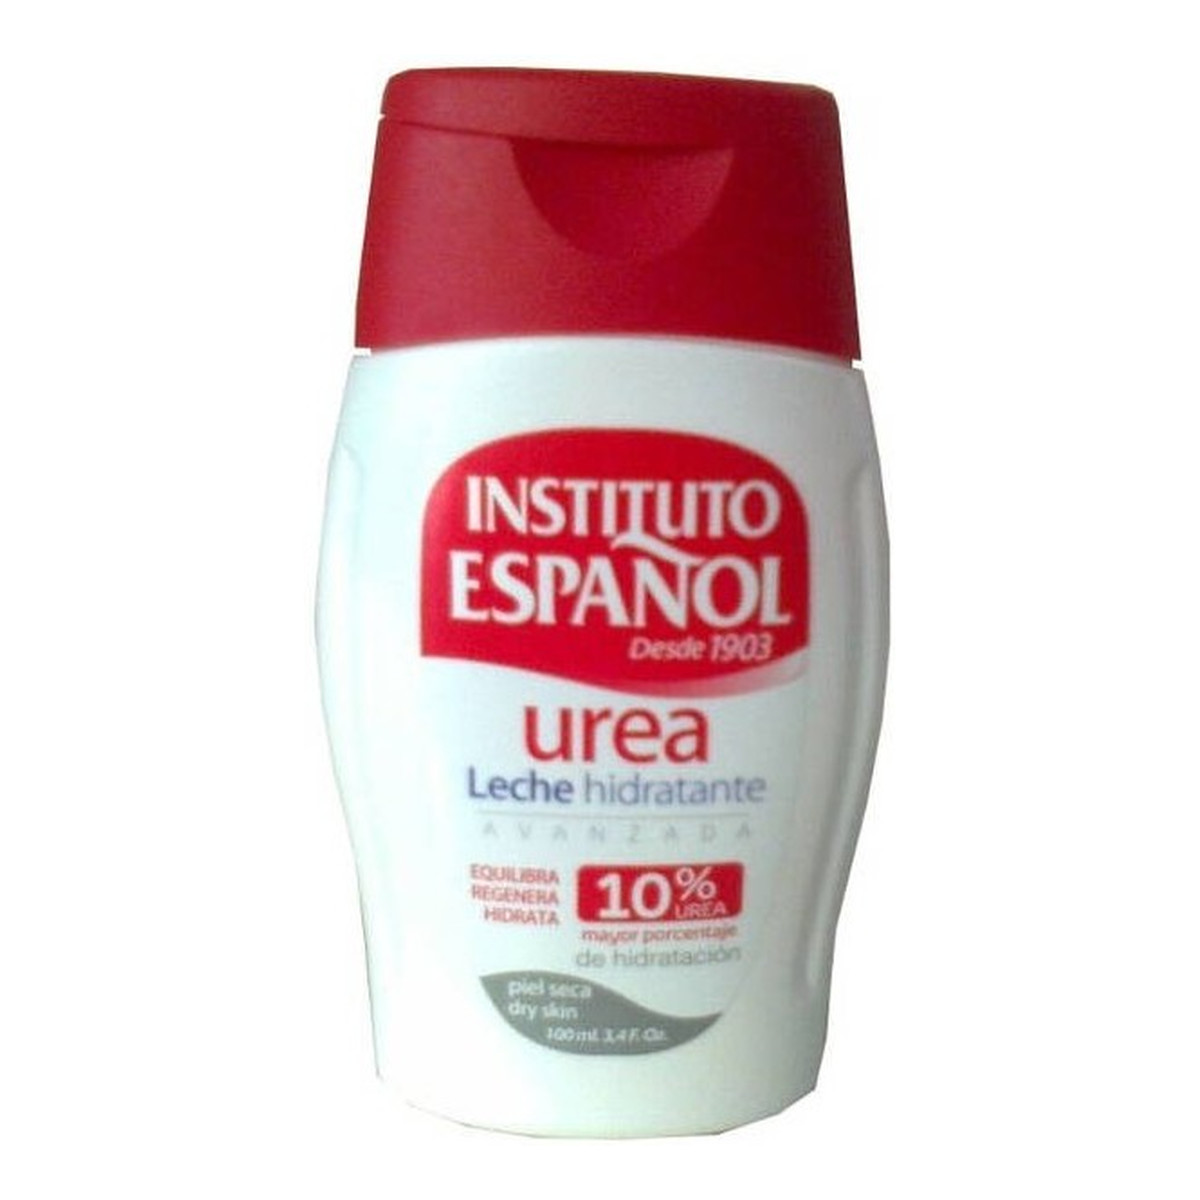 Instituto Espanol Urea Ultra nawilżający balsam do ciała z mocznikiem 100ml